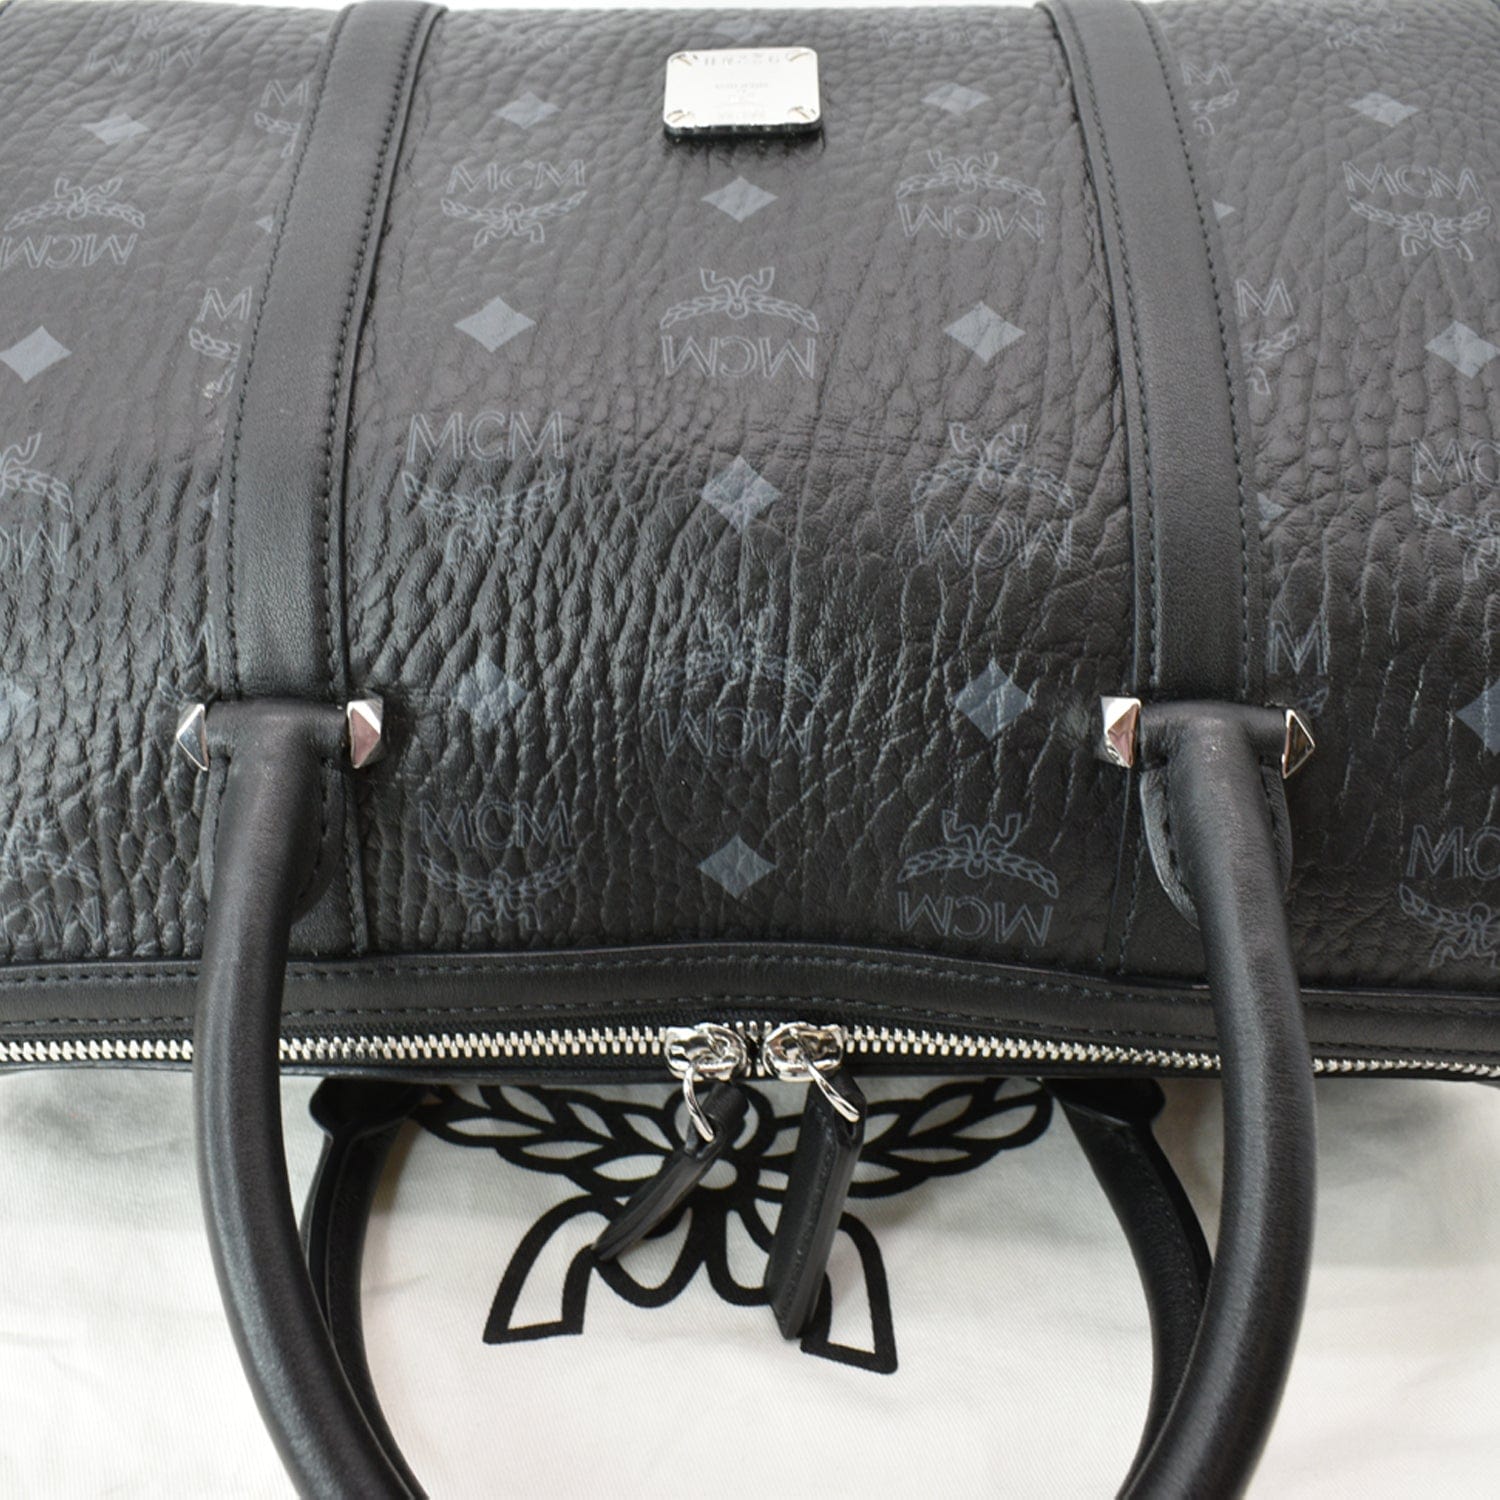 Medium Boston Bag in Monogram Leather Black